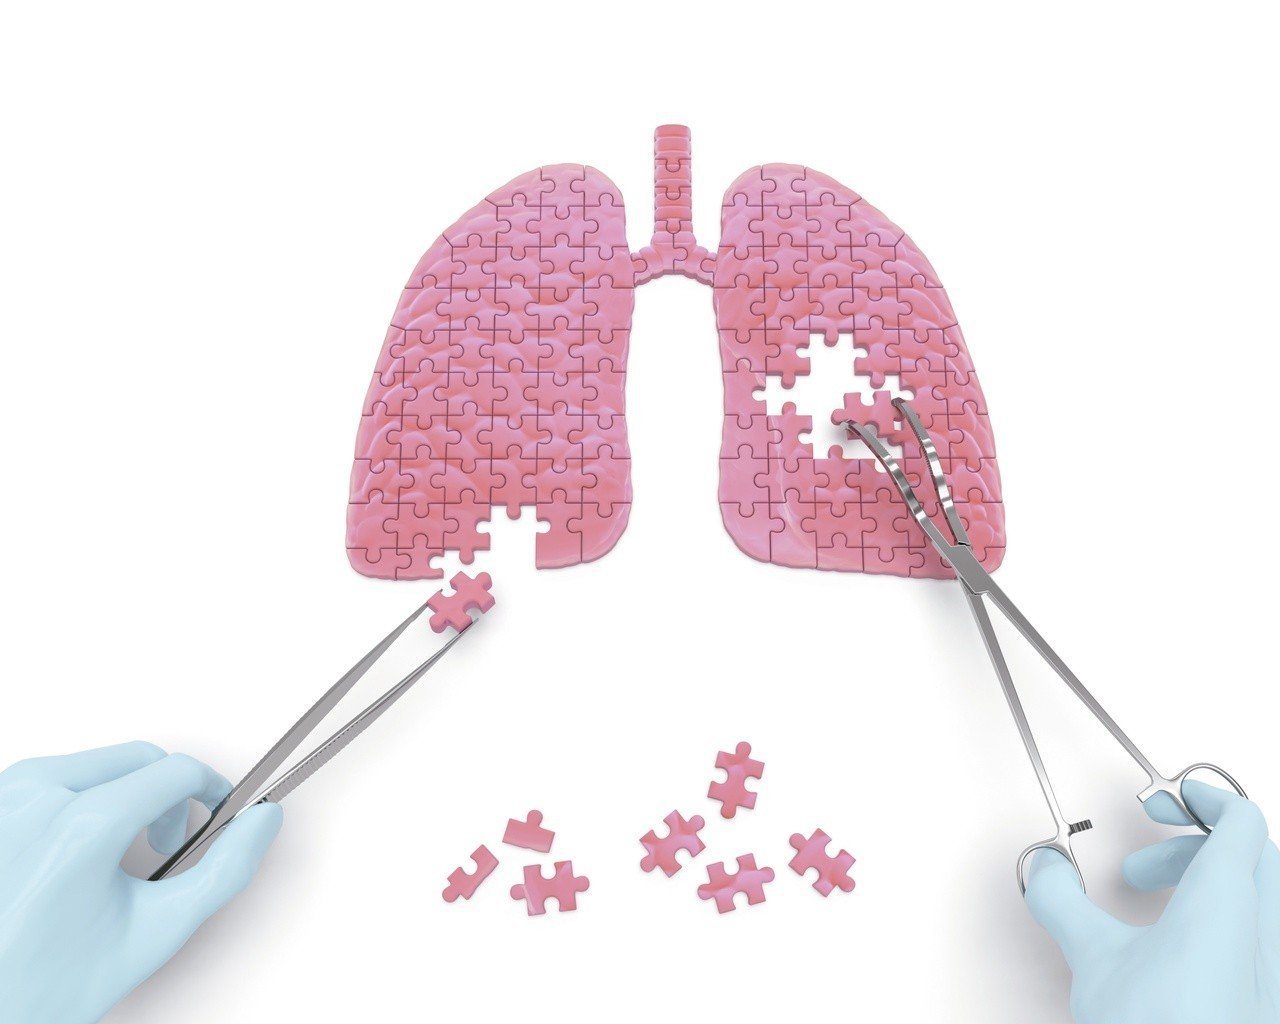 醫師提醒，國內肺癌患者逐年增加，建議高危險群定期接受檢查。

圖／123RF